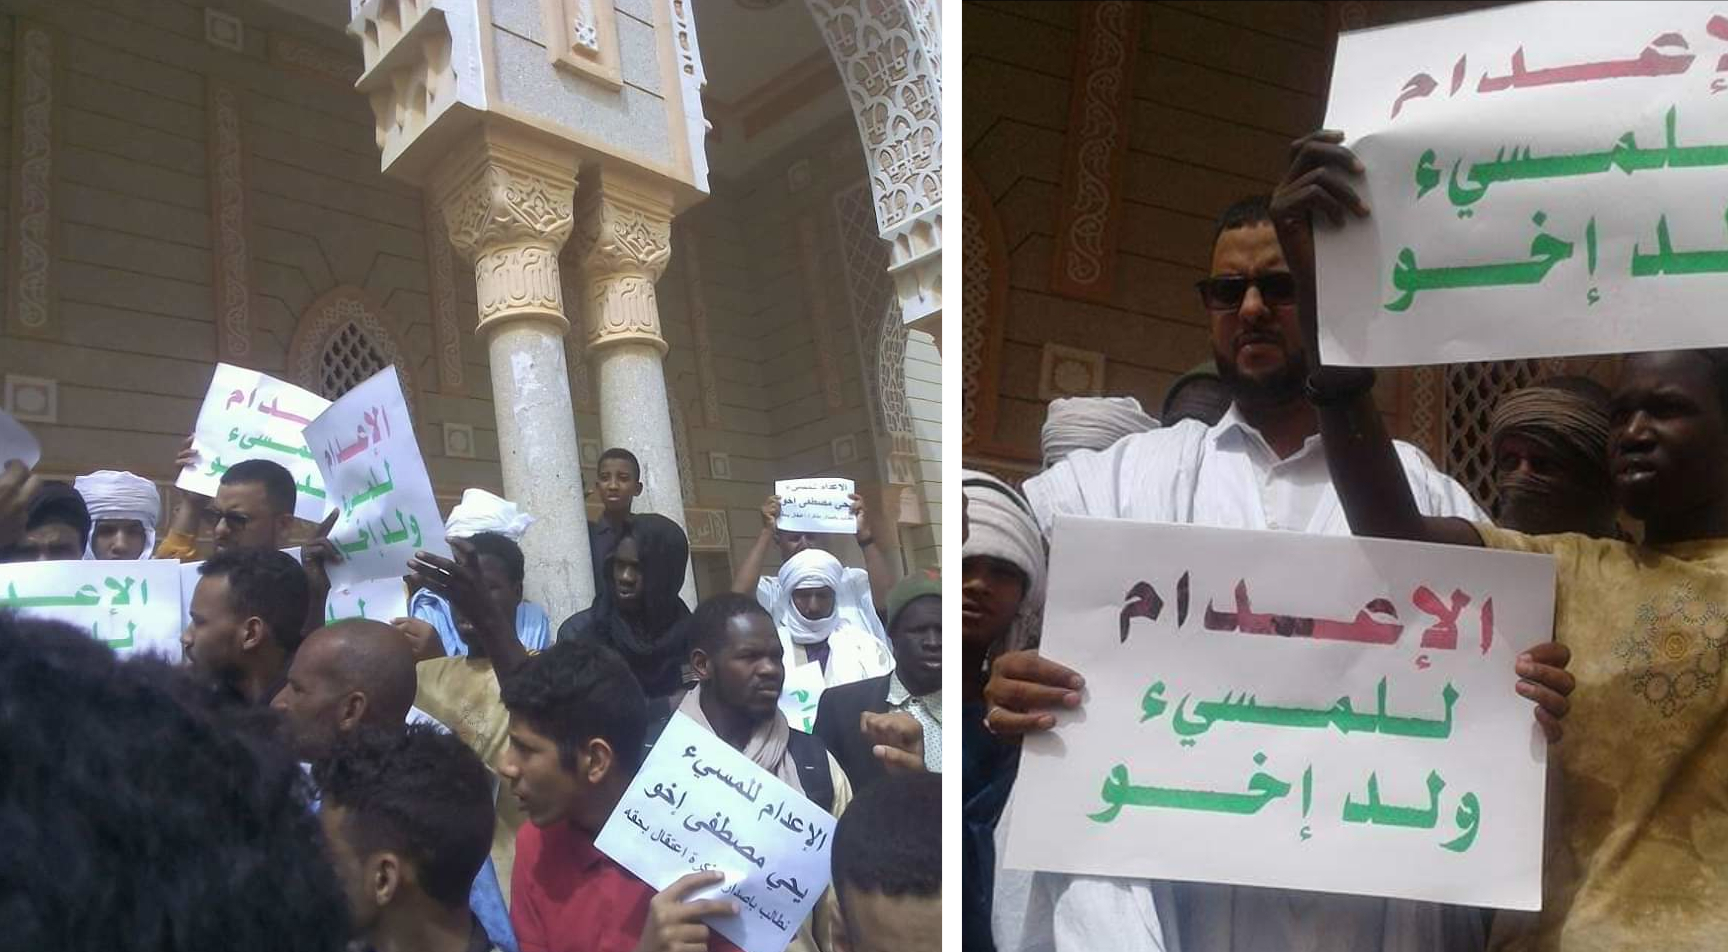 Am 1. März 2019 fordern Bürger vor der großen Saudischen Moschee in Mauretaniens Hauptstadt Nouakchott die Verhaftung und die Hinrichtung von Yahya Ekhou. "Exekution für den Schänder Ekhou", heißt es unter anderem rechts auf den Plakaten. Urheber: fanatische Islamisten